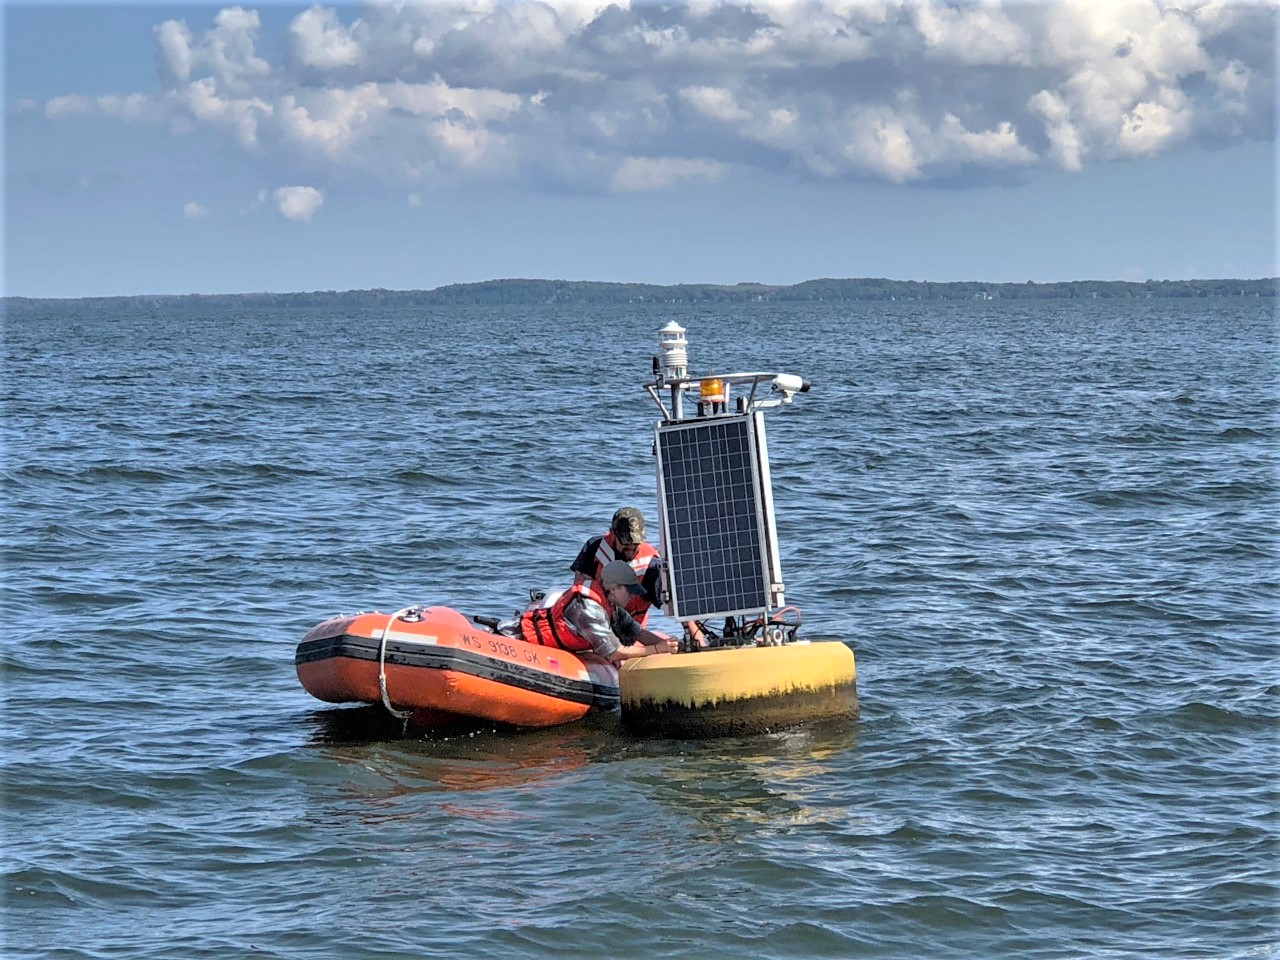 Two men in small launch repair buoy in Lake Michigan